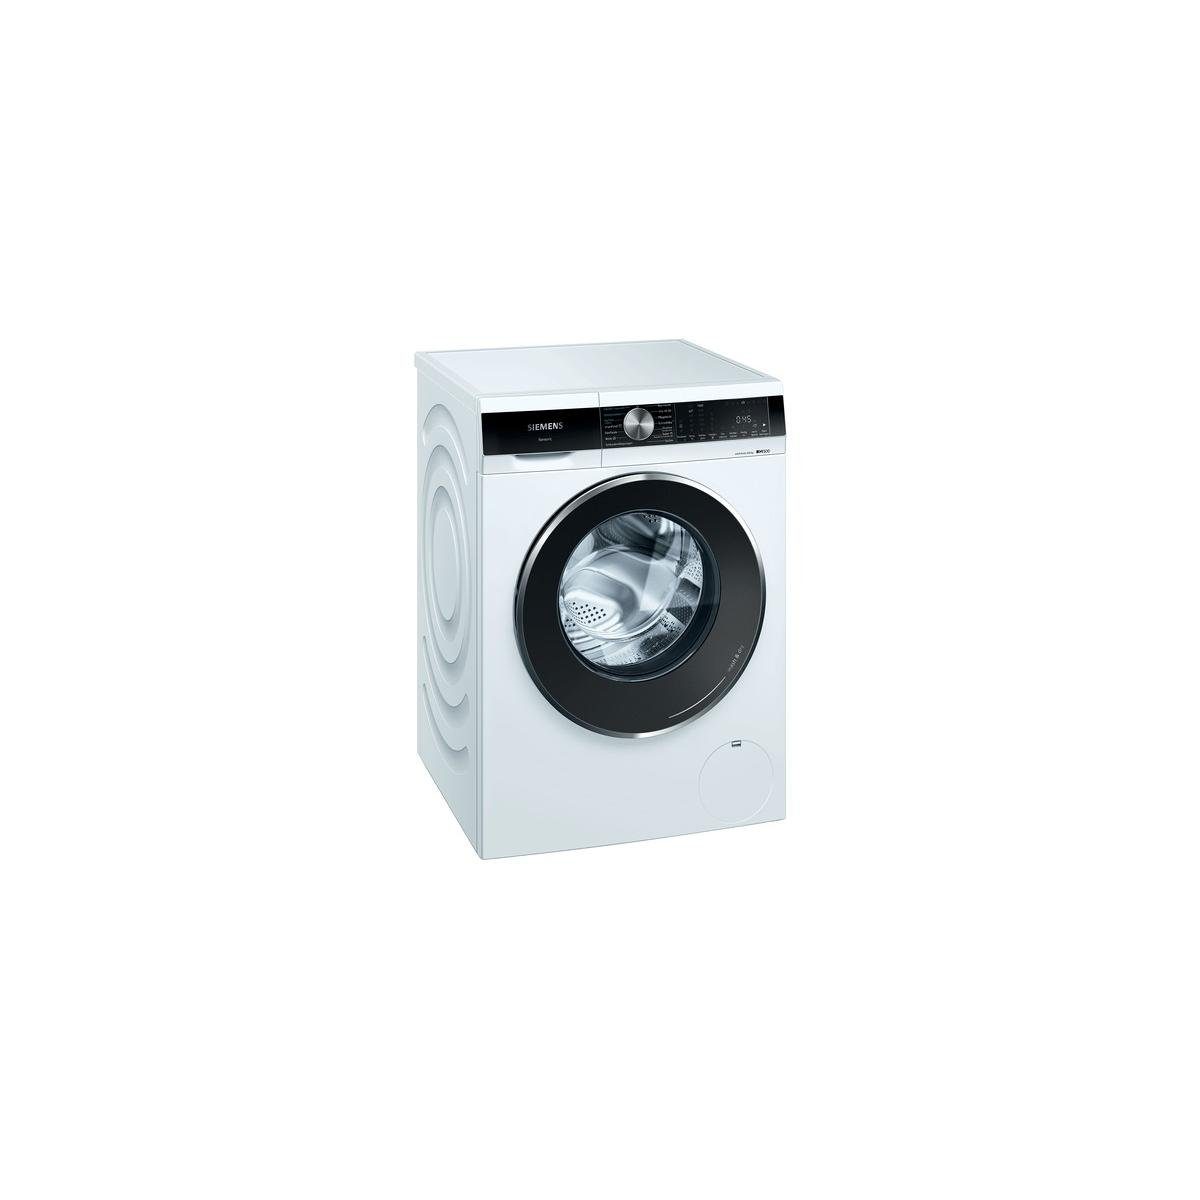 SIEMENS Waschmaschine WN44G240, 9 kg, 1400 U/min, iQdrive, Siemens WN44G240  iQ500 Waschtrockner